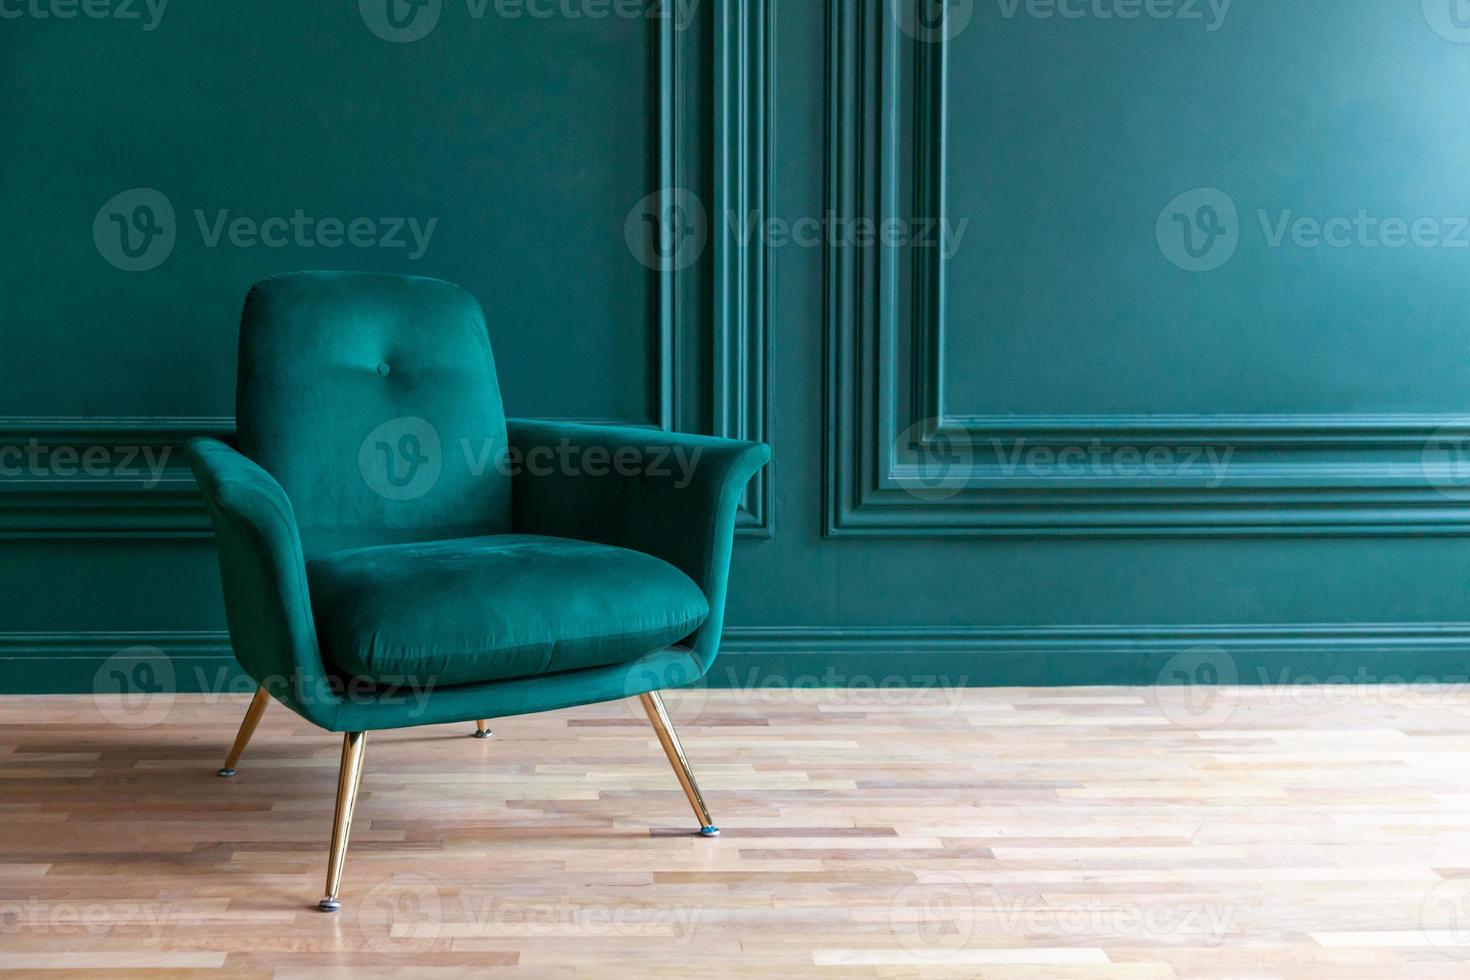 bella camera interna pulita di lusso classico blu verde in stile classico con poltrona morbida verde. sedia blu-verde antica d'epoca in piedi accanto al muro color smeraldo. design per la casa minimalista. foto